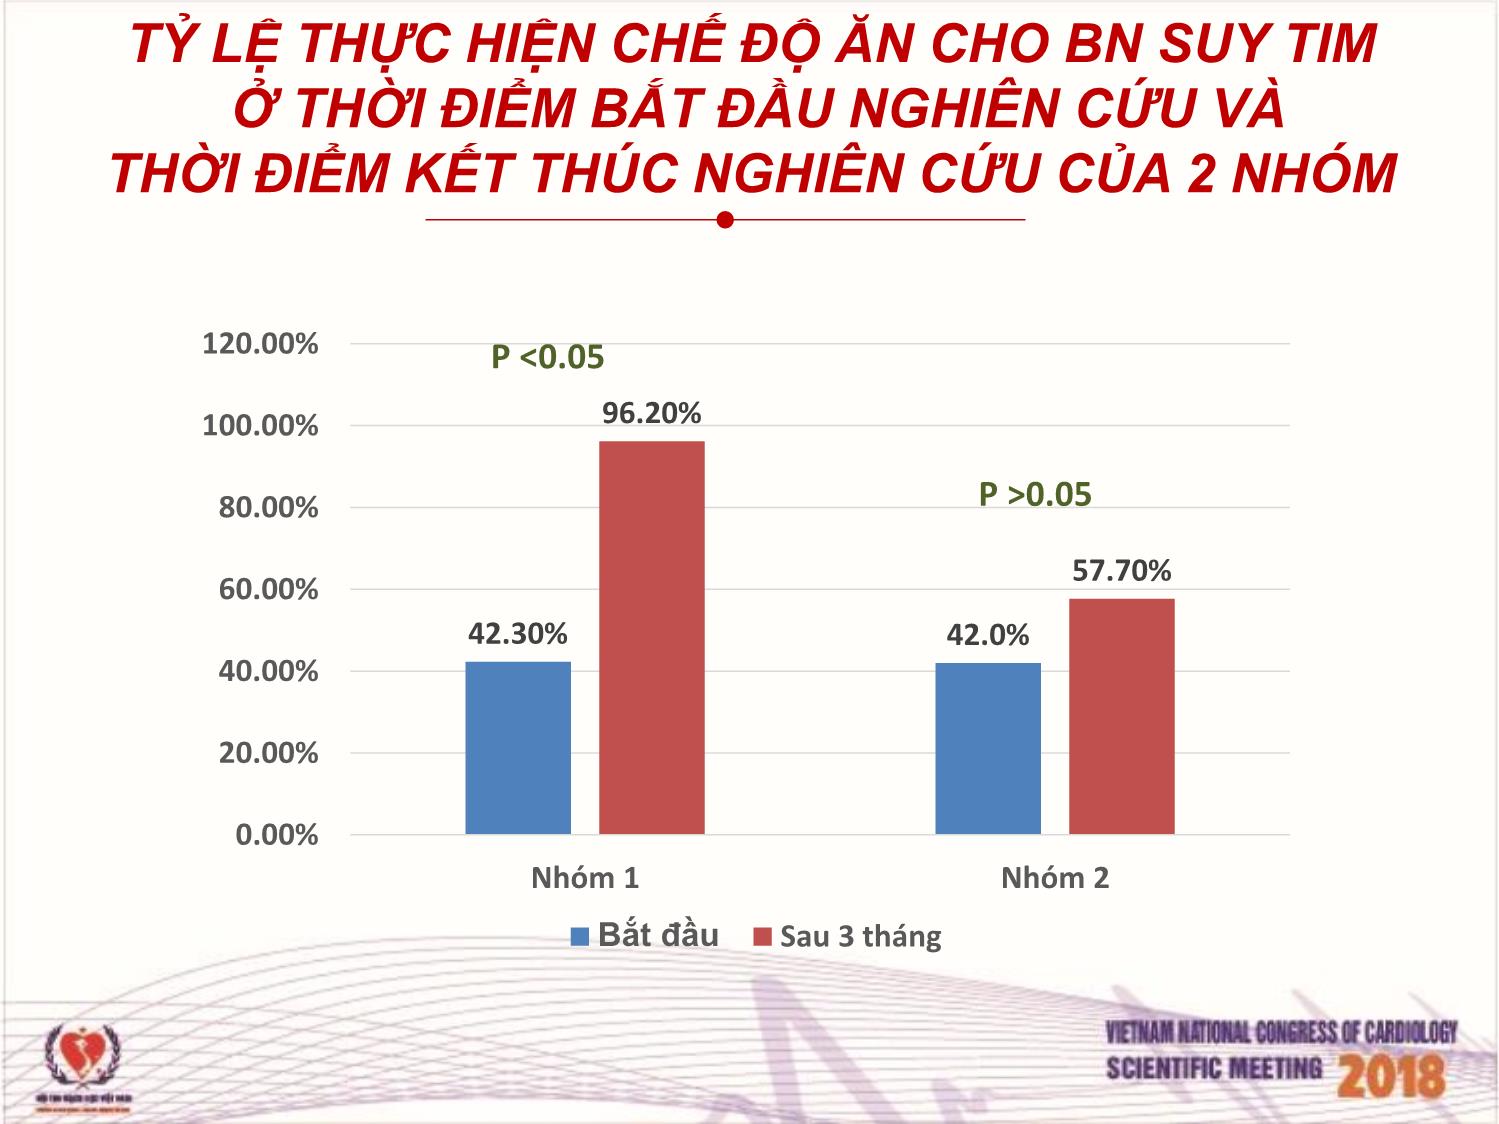 Hiệu quả của việc tư vấn chế độ ăn thực hiện bởi điều dưỡng cho bệnh nhân suy tim điều trị ngoại trú tại viện tim mạch Việt Nam trang 8